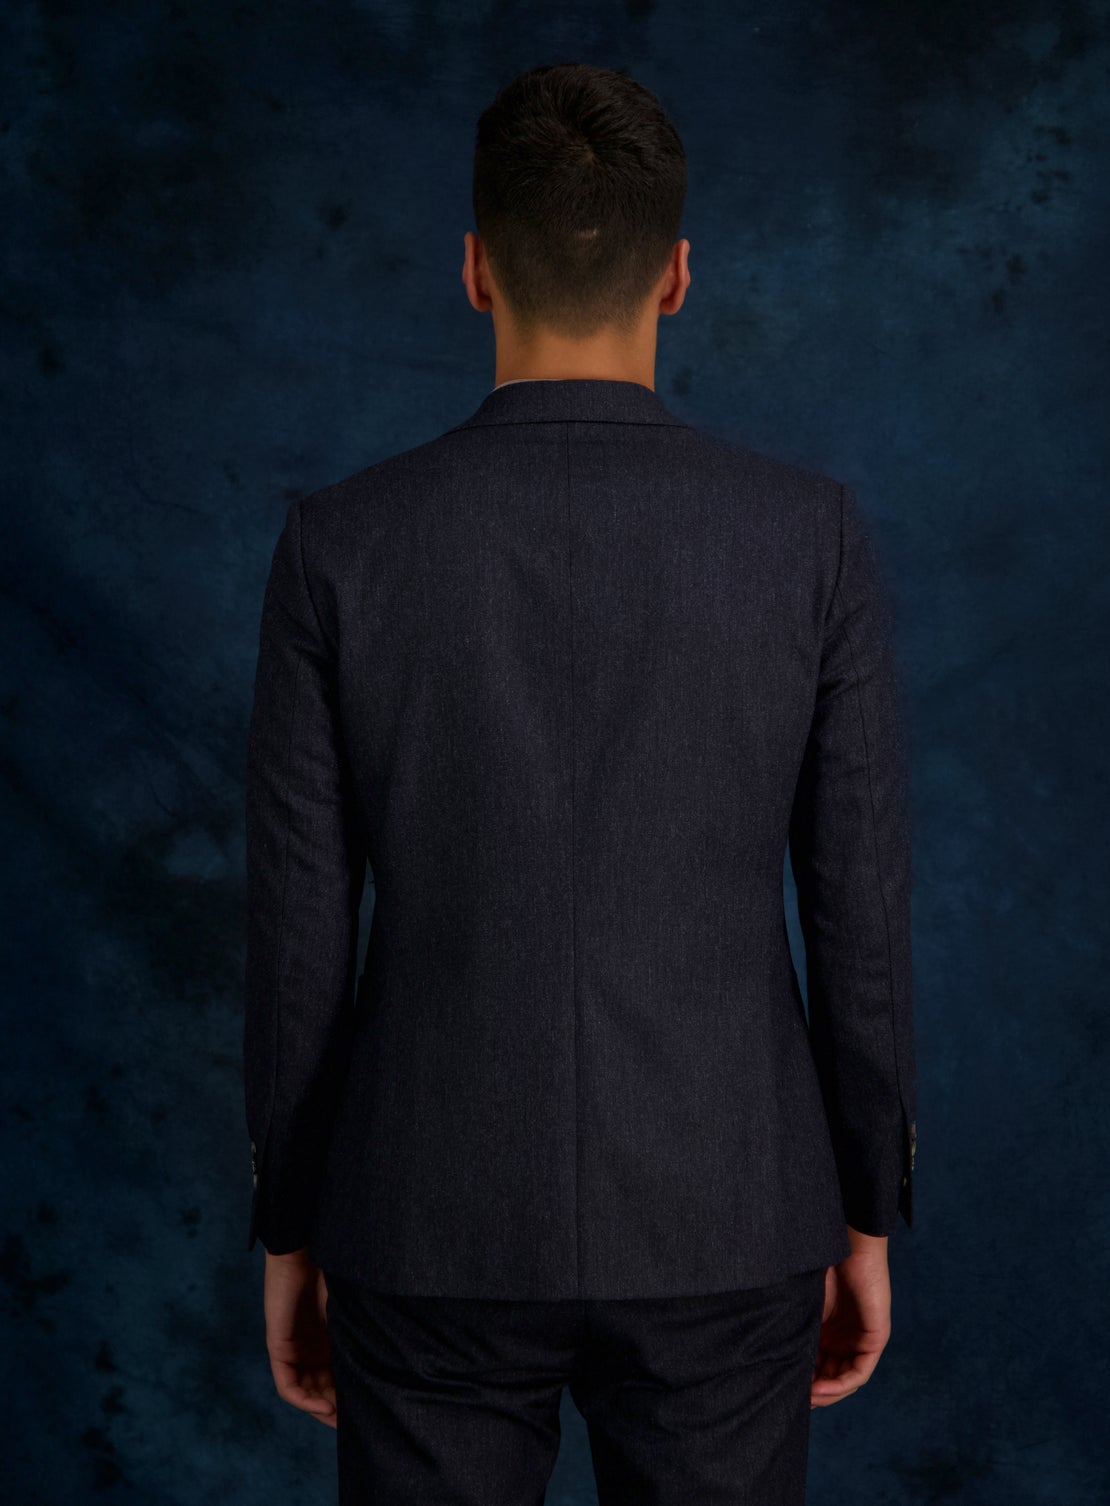 Navy Tweed Separate Jacket